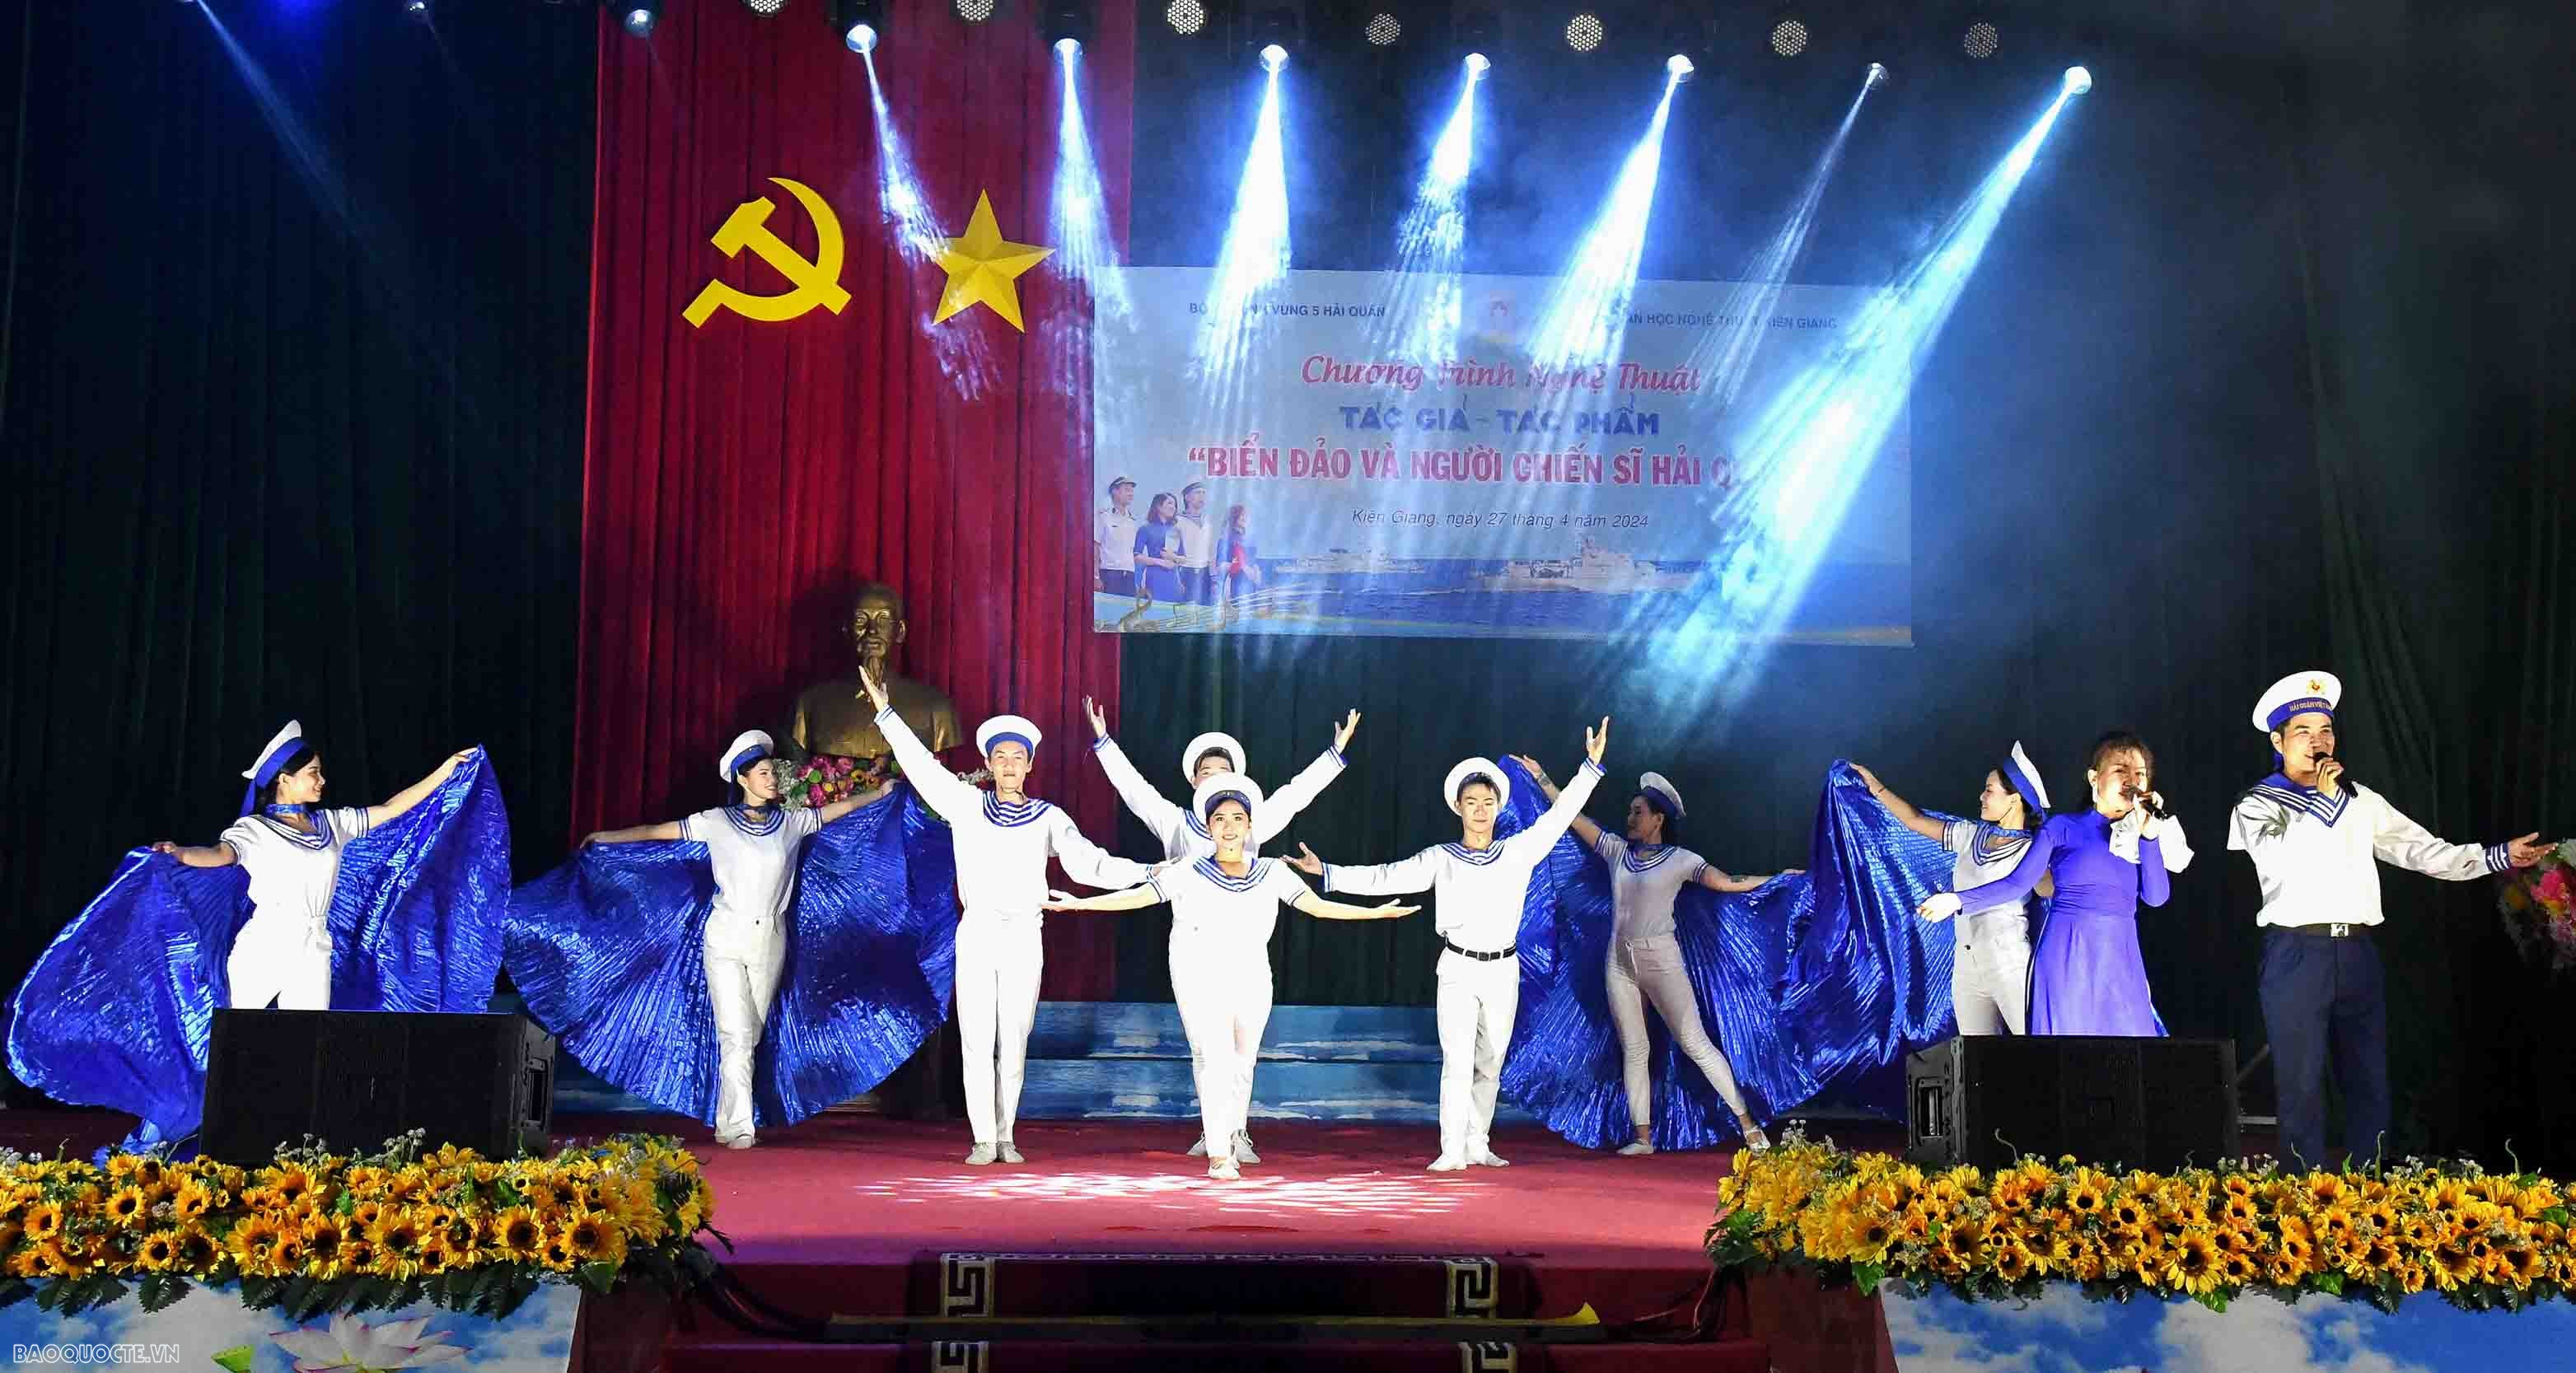 Únase a los soldados de la Armada para celebrar el 70 aniversario de la victoria de Dien Bien Phu